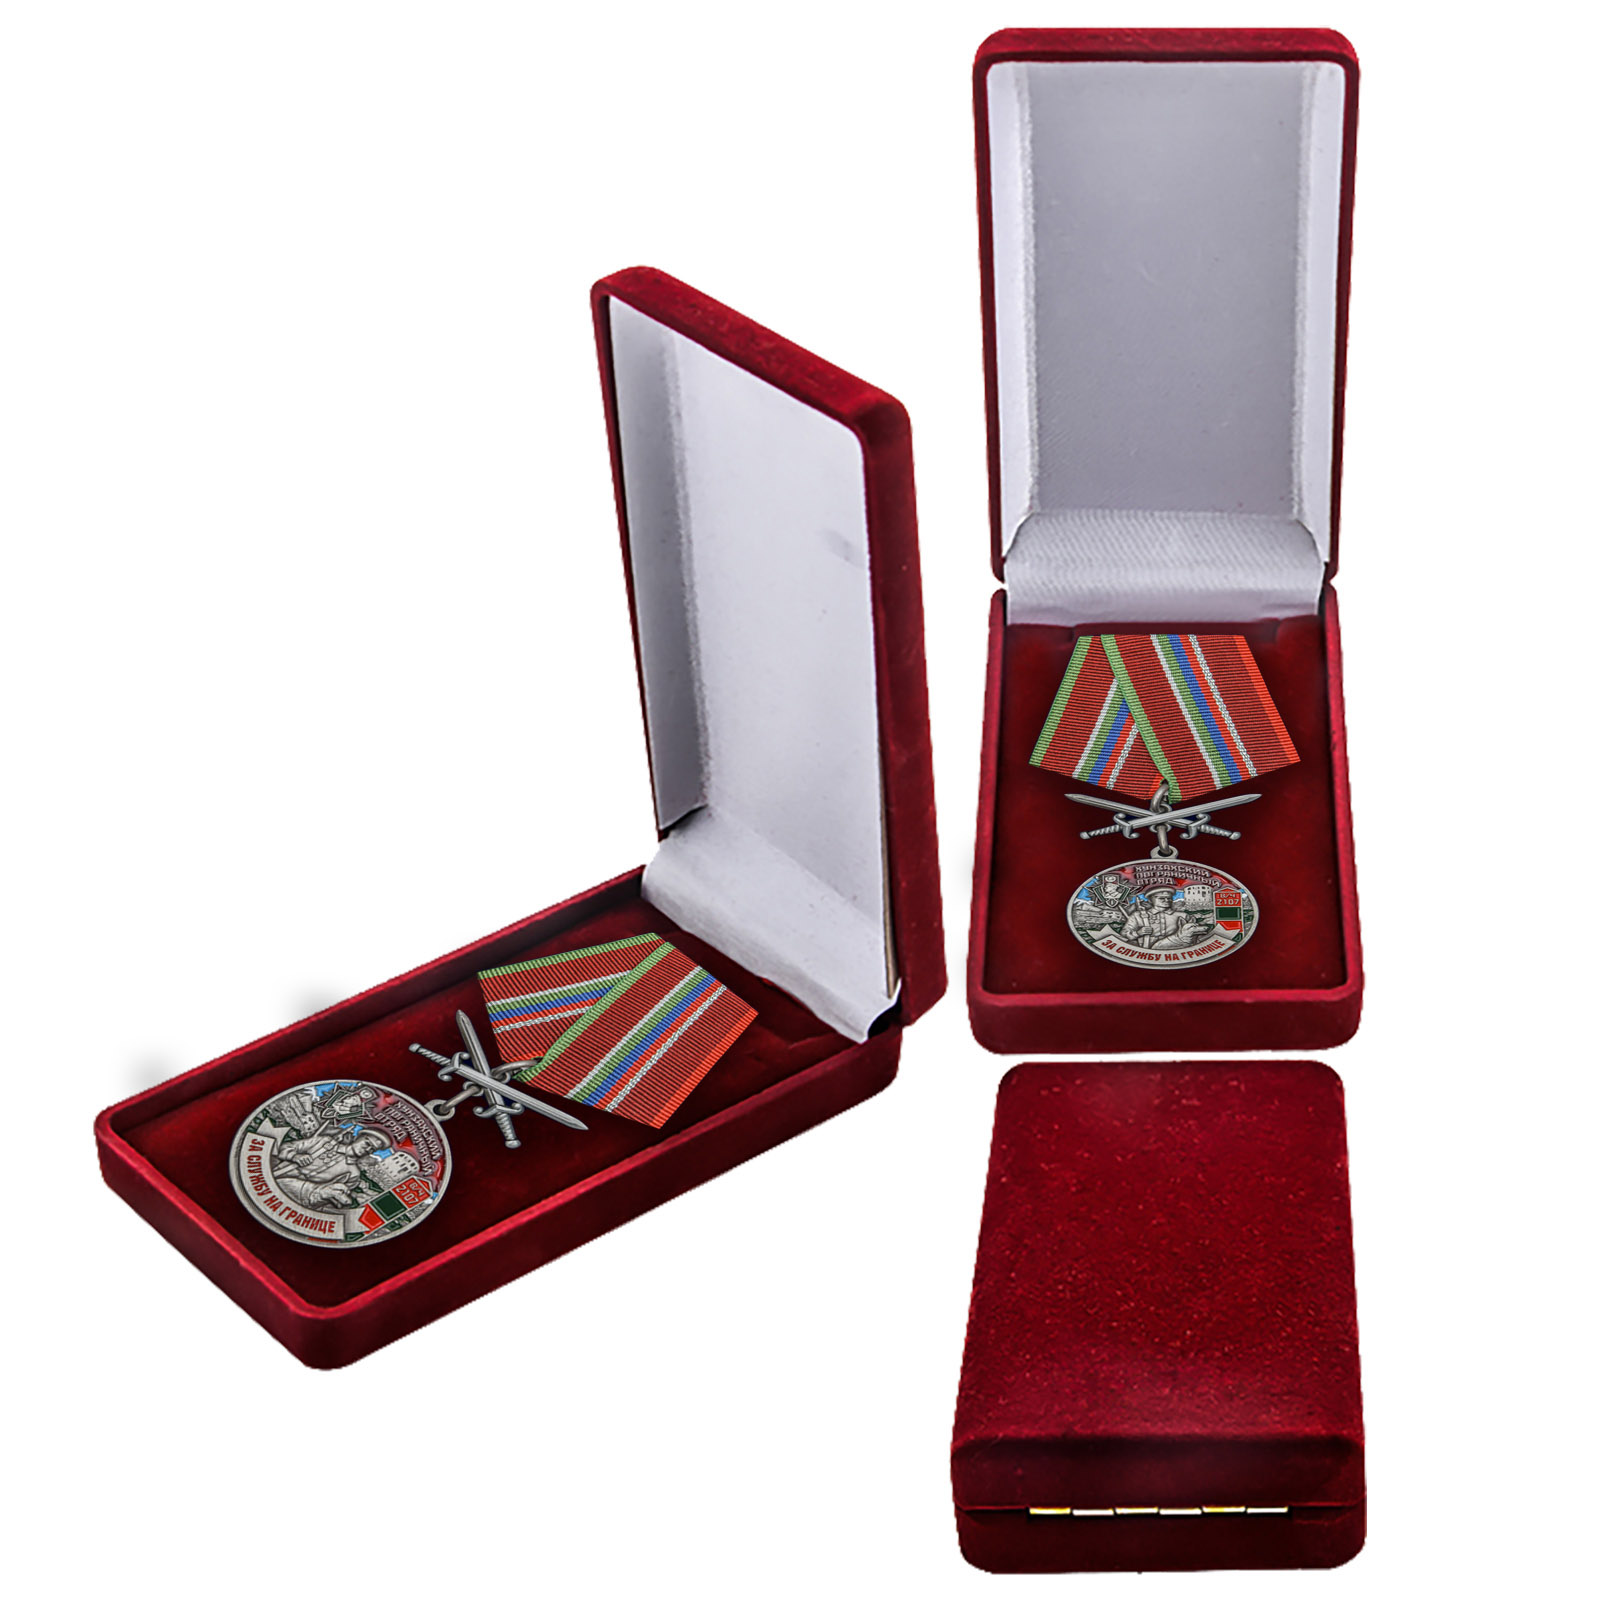 Наградная медаль "За службу в Хунзахском пограничном отряде" 